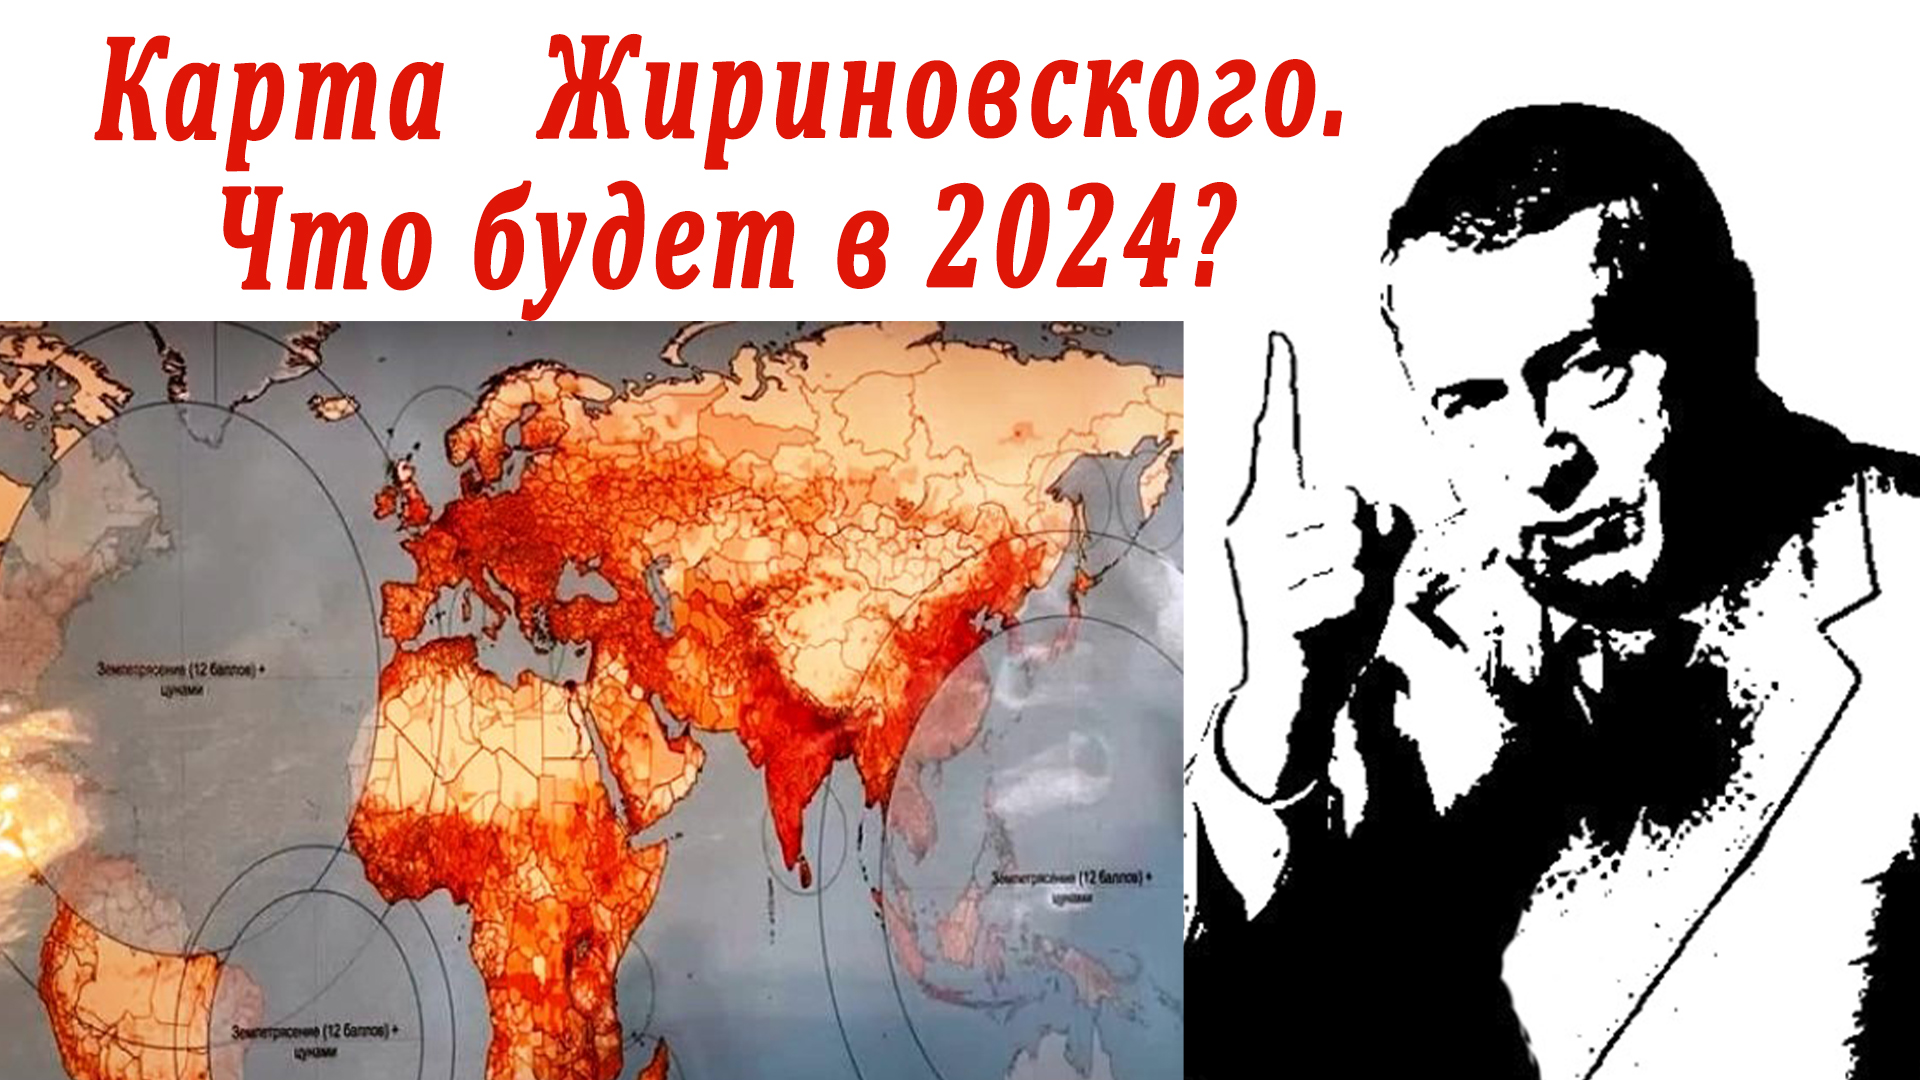 Предсказания на 2024 1 канал. Пророчества Жириновского на 2024. Карта Жириновского на 2024 год. Предсказания Жириновского на 2024 год для России.